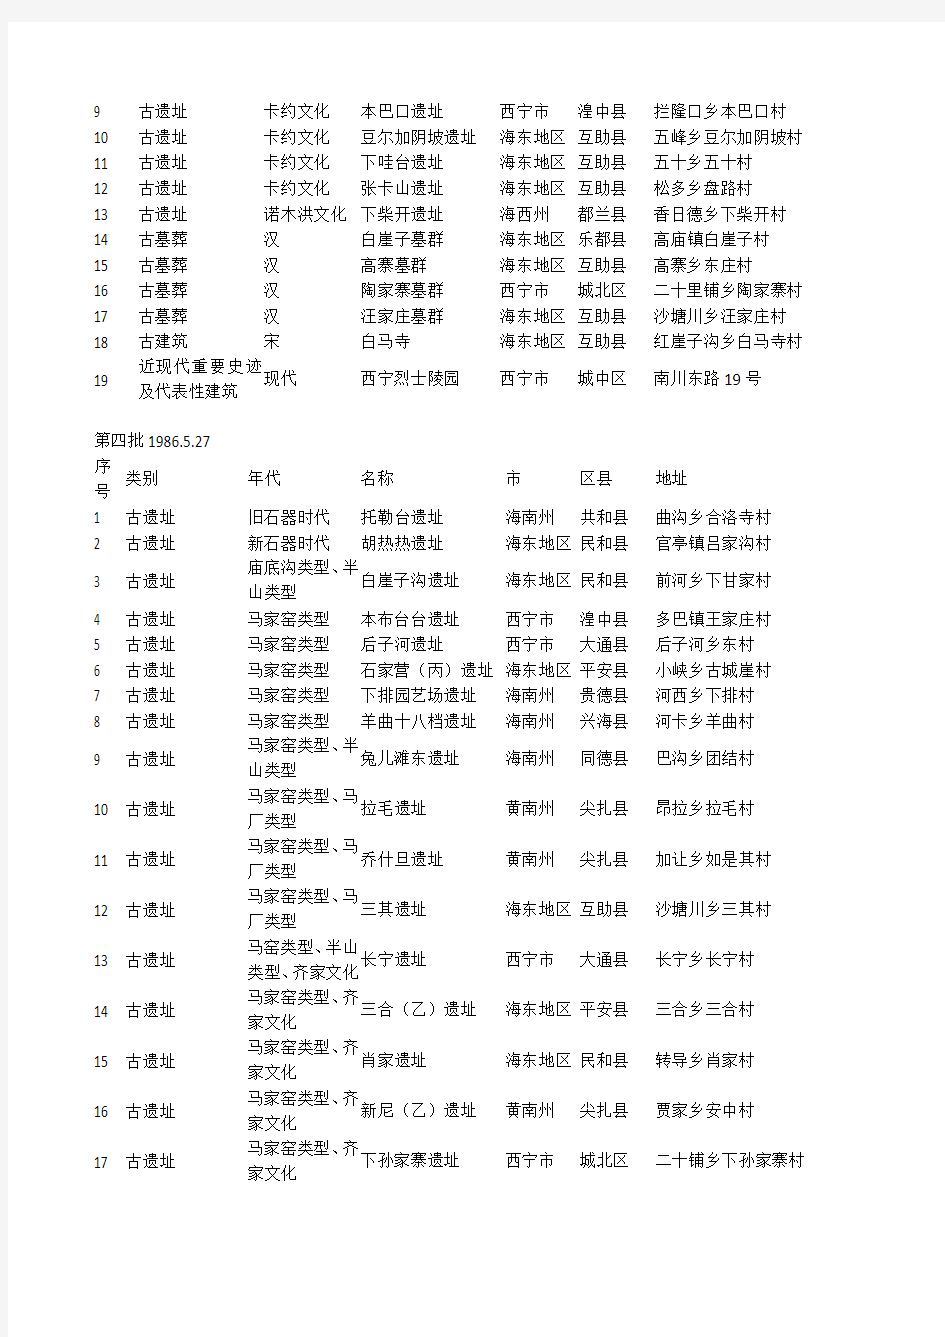 青海省级文物保护单位(1-8批)